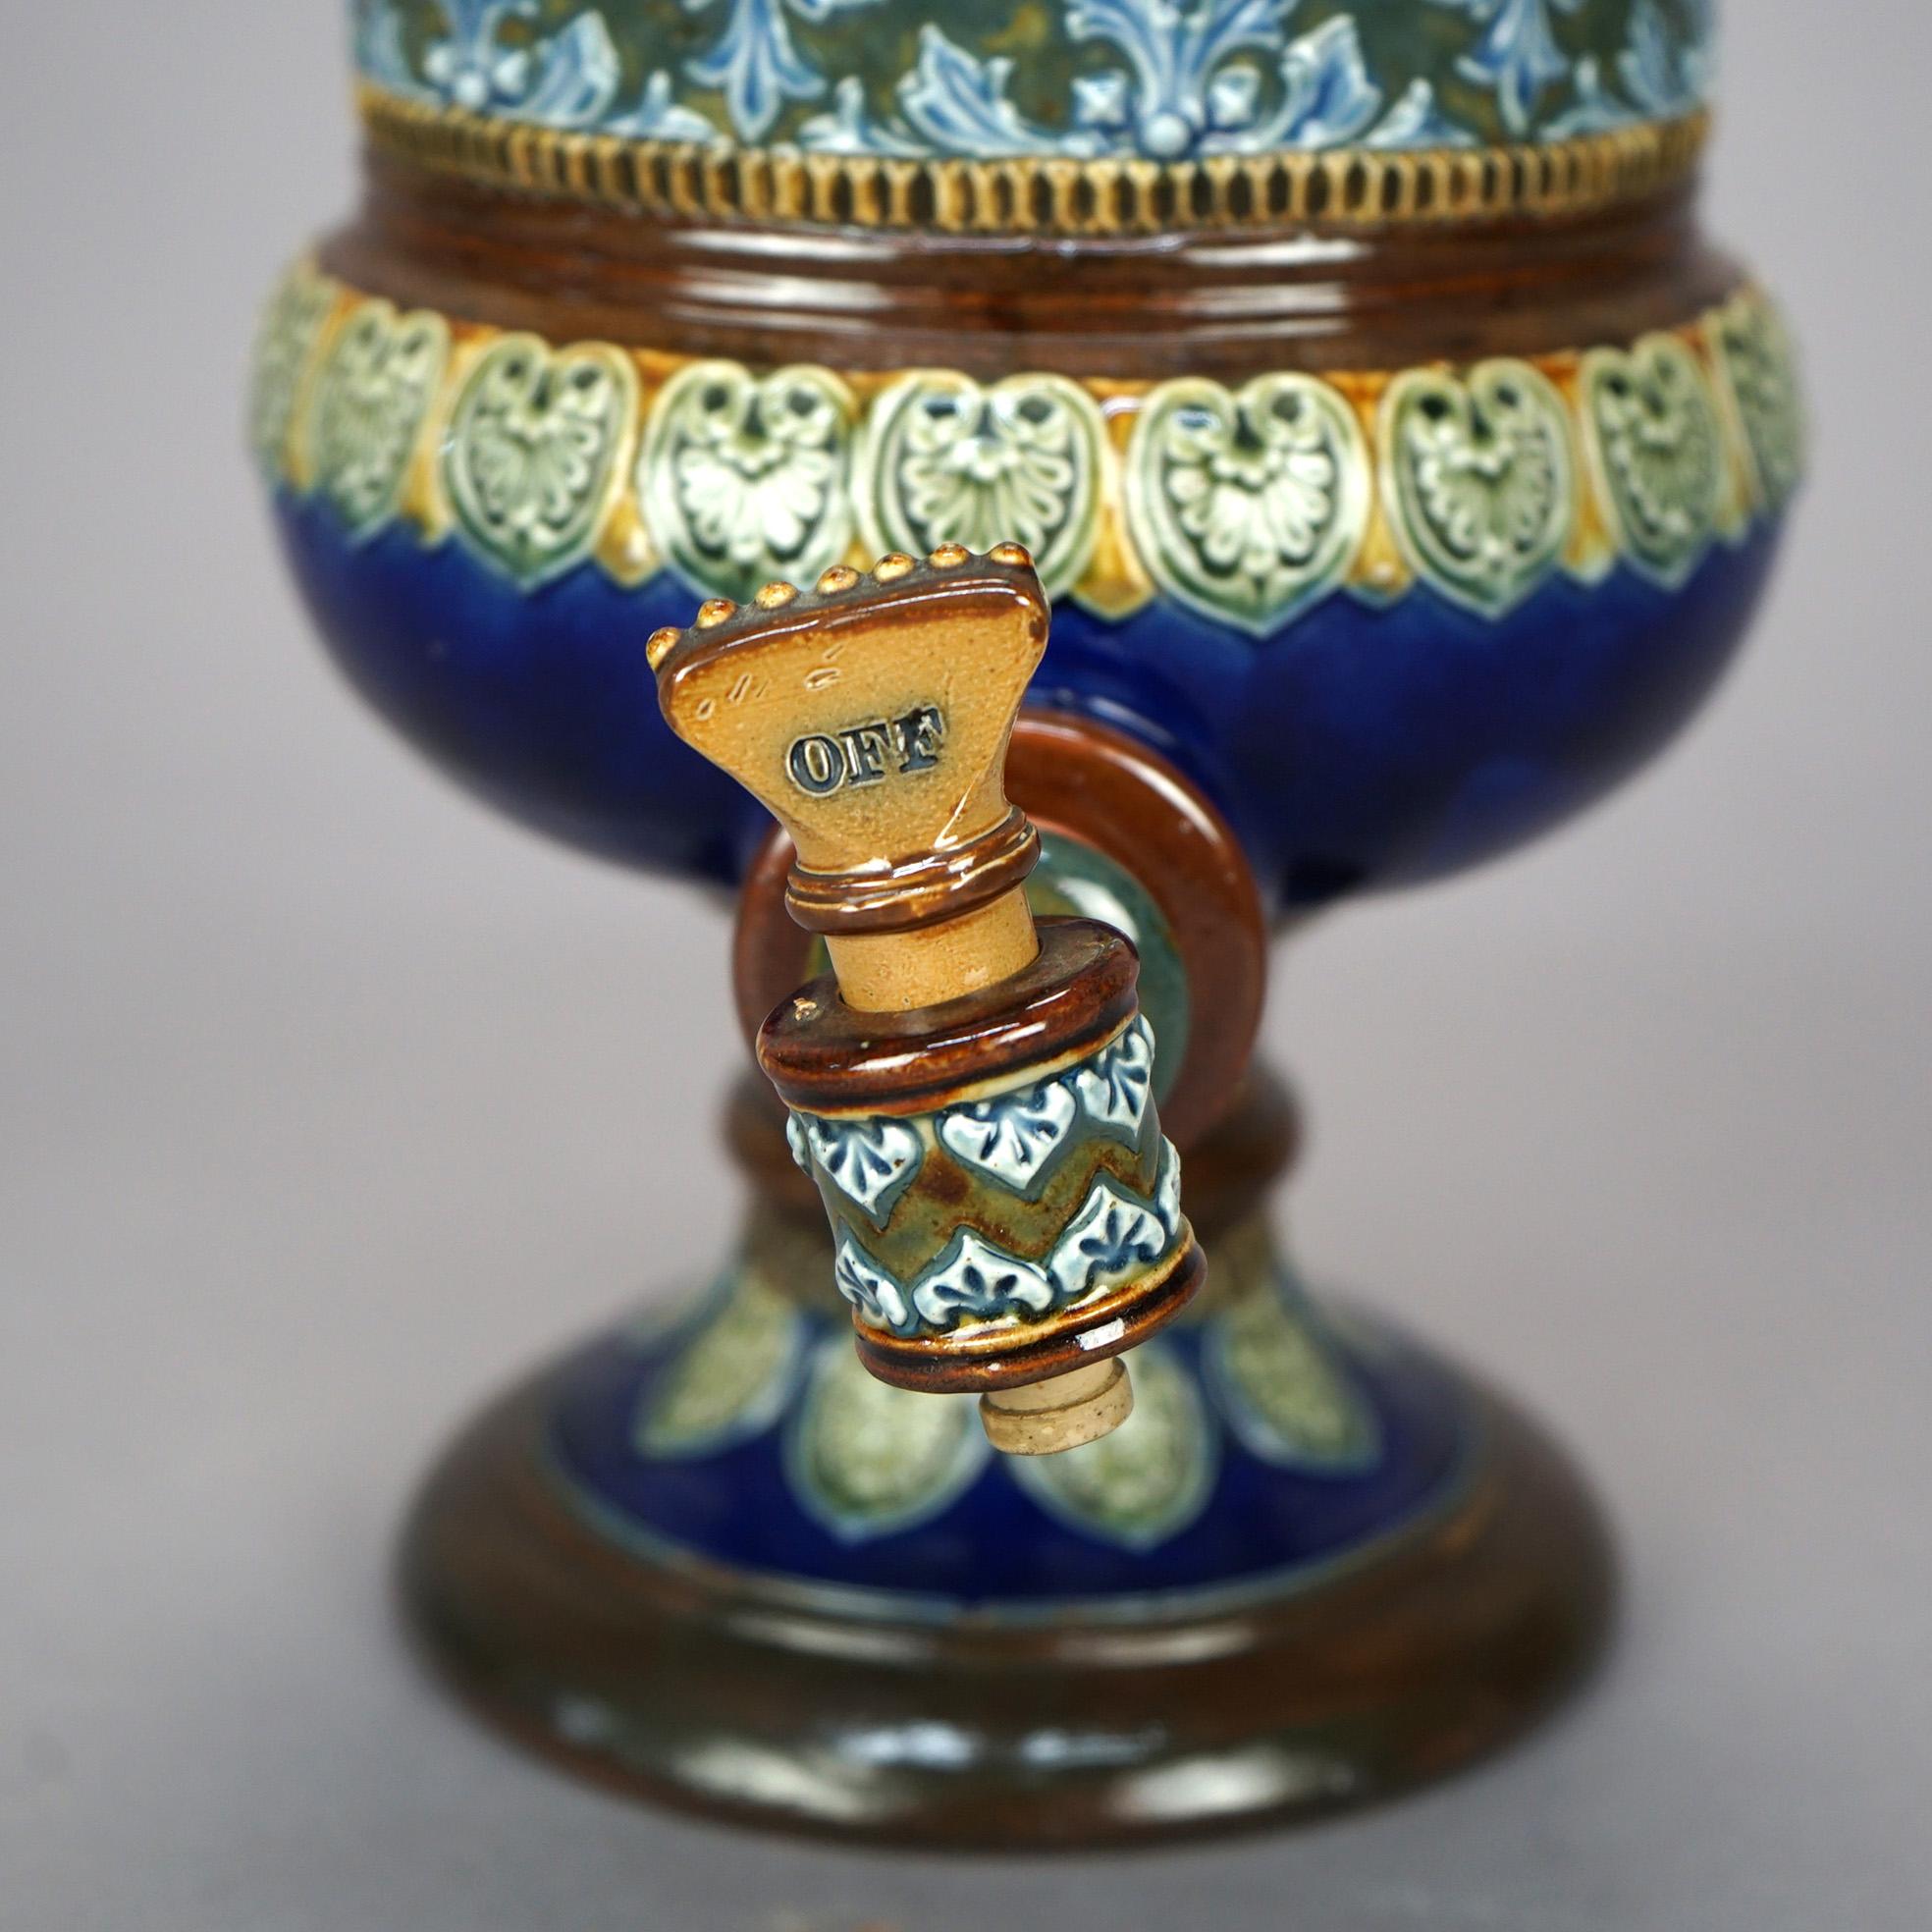 19th Century Antique English Royal Doulton Pottery Tea Dispenser, circa 1890